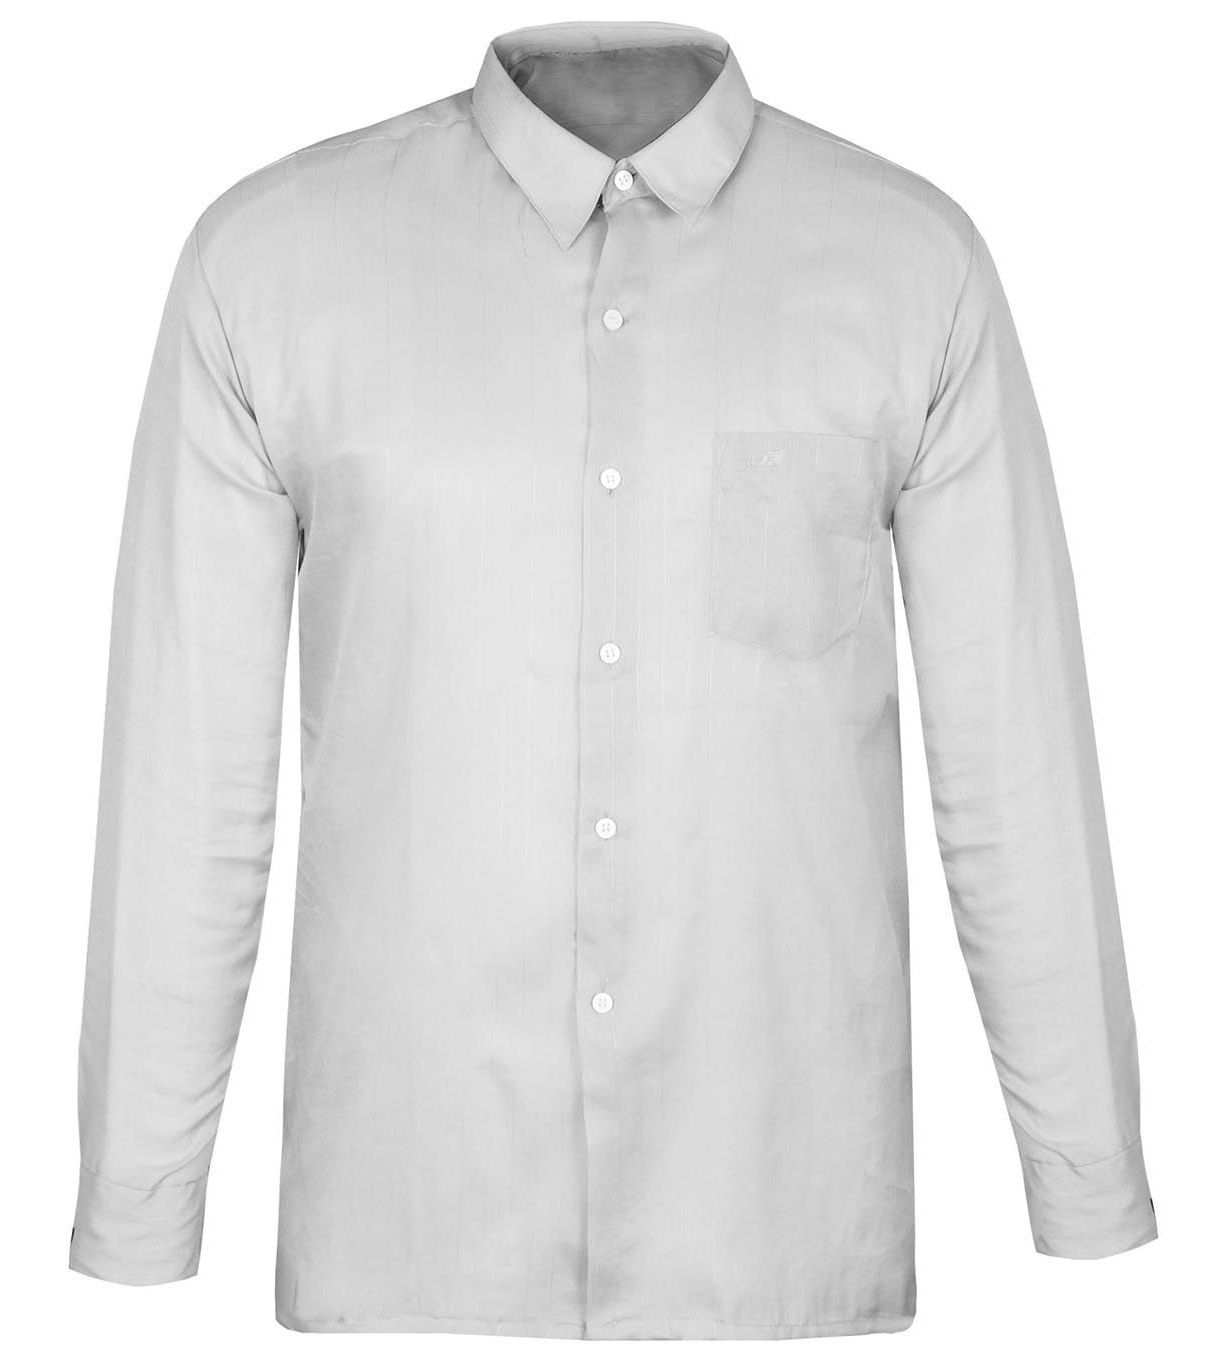 پیراهن مردانه کد PM010 رنگ سفید 